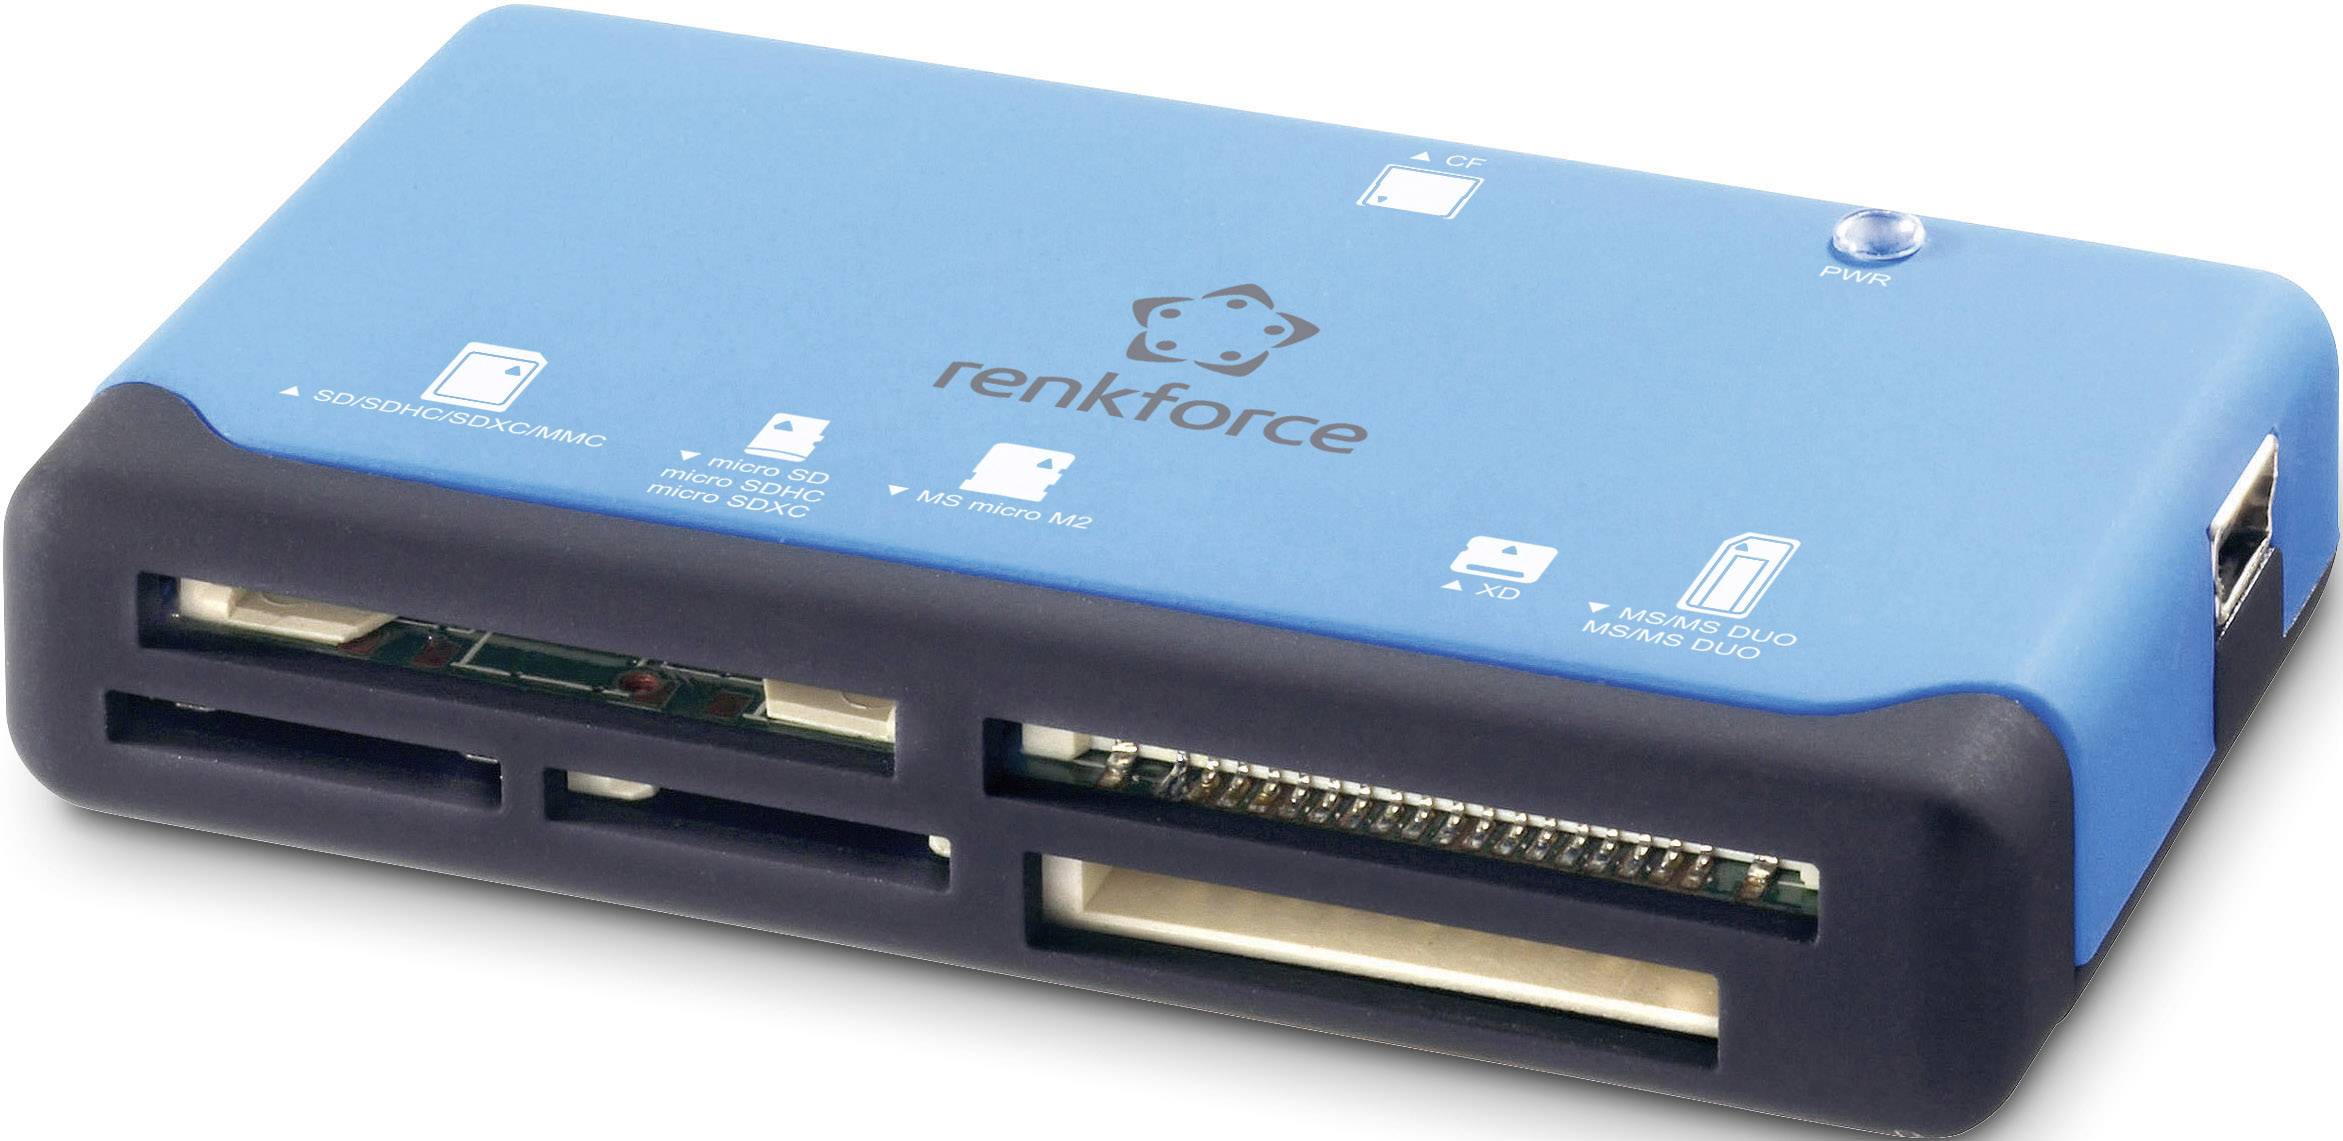 Lecteur carte micro SD micro SDHC USB 2.0 Bleu